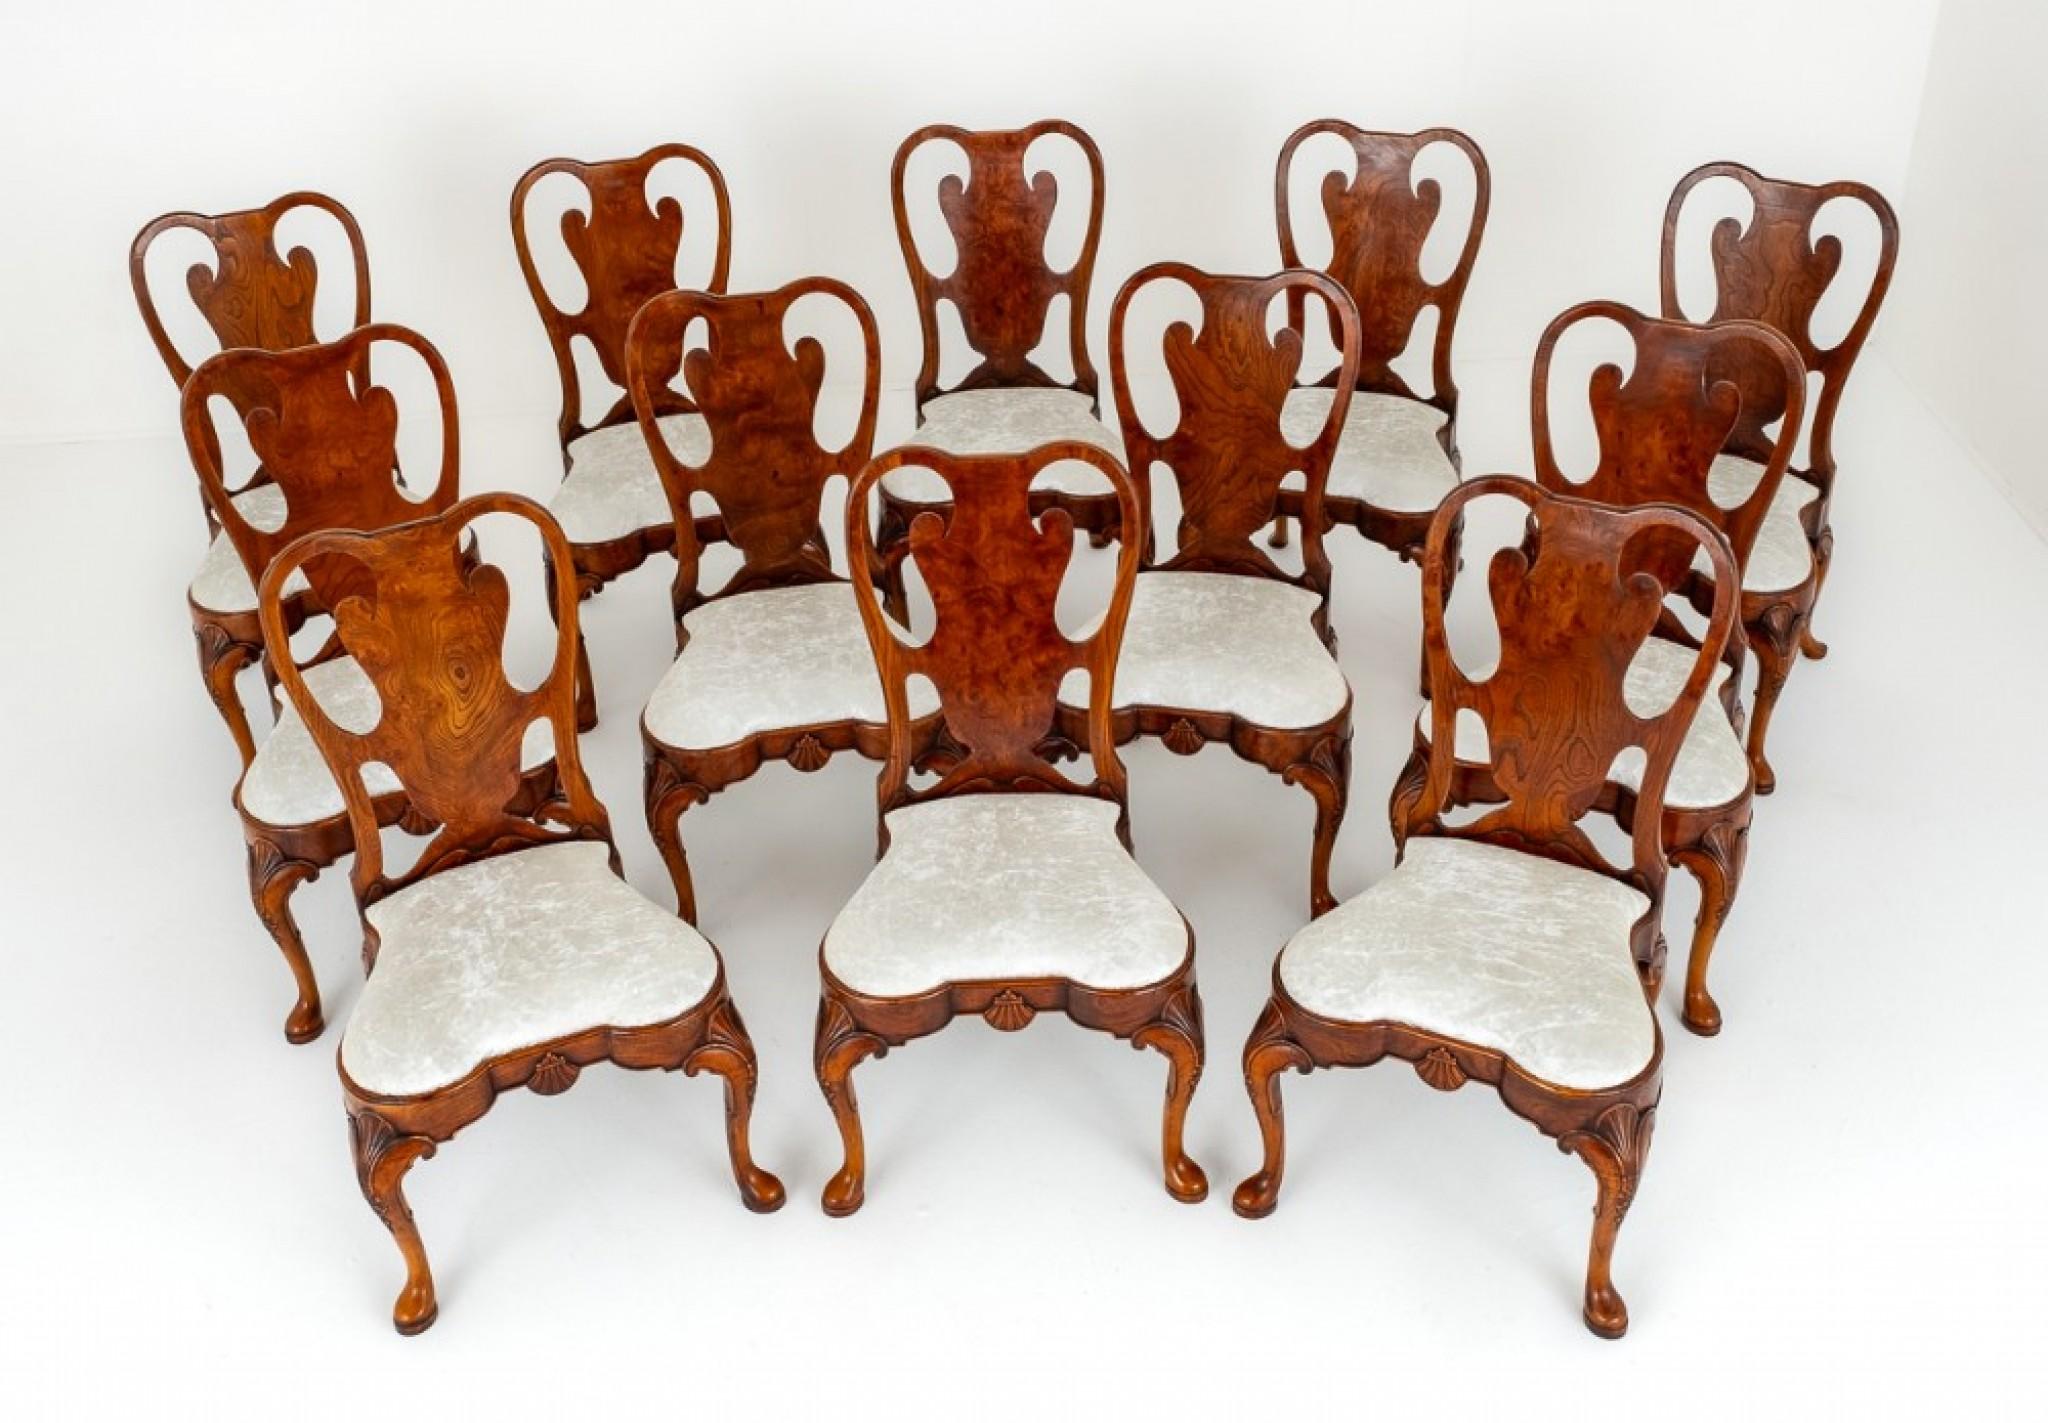 Ensemble de 12 chaises de salle à manger de style Queen Anne.
Ces chaises sont dans le style de Giles.
Circa 1920
Les chaises reposent sur des pieds cabriole avec des pieds pad, avec des coquilles sculptées au niveau des genoux.
Les pieds arrière